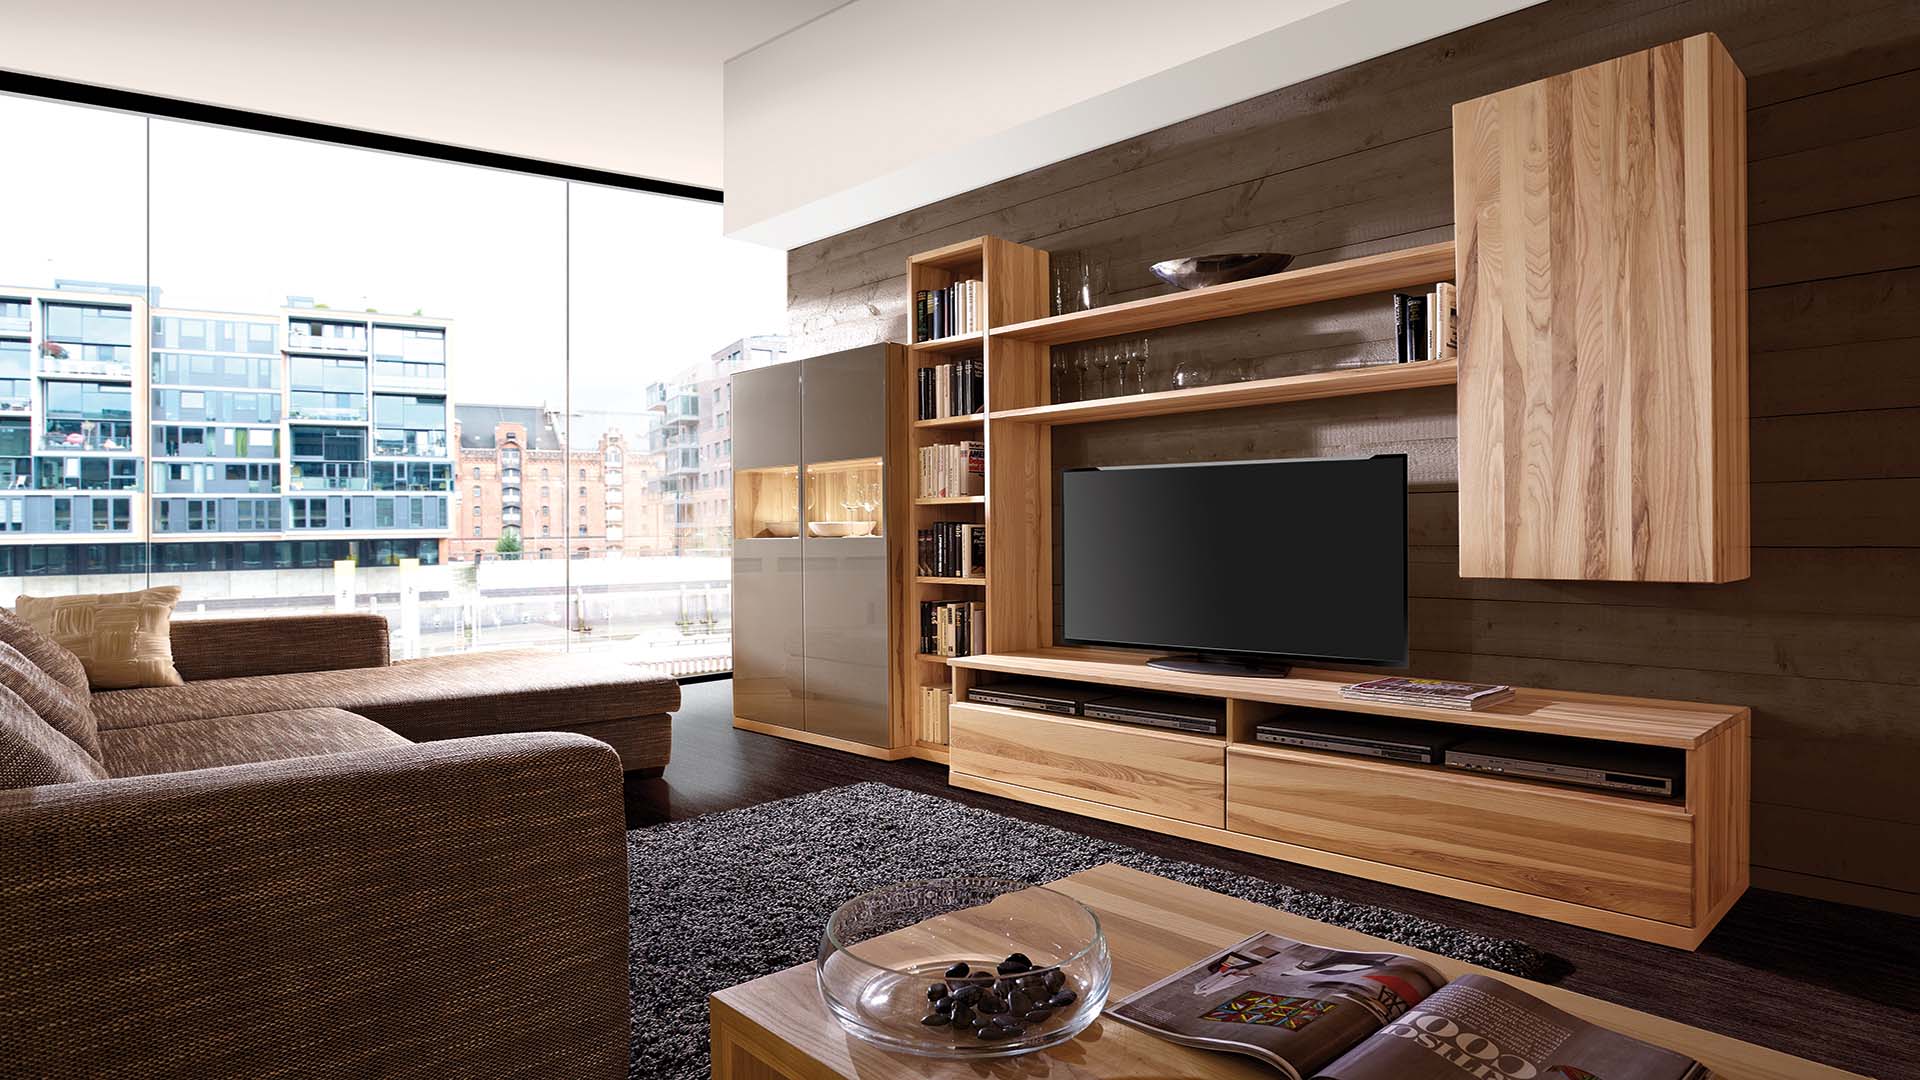 h-design-malaga-asteiche-natur-wohnwand-hochschrank-tv-lowboard